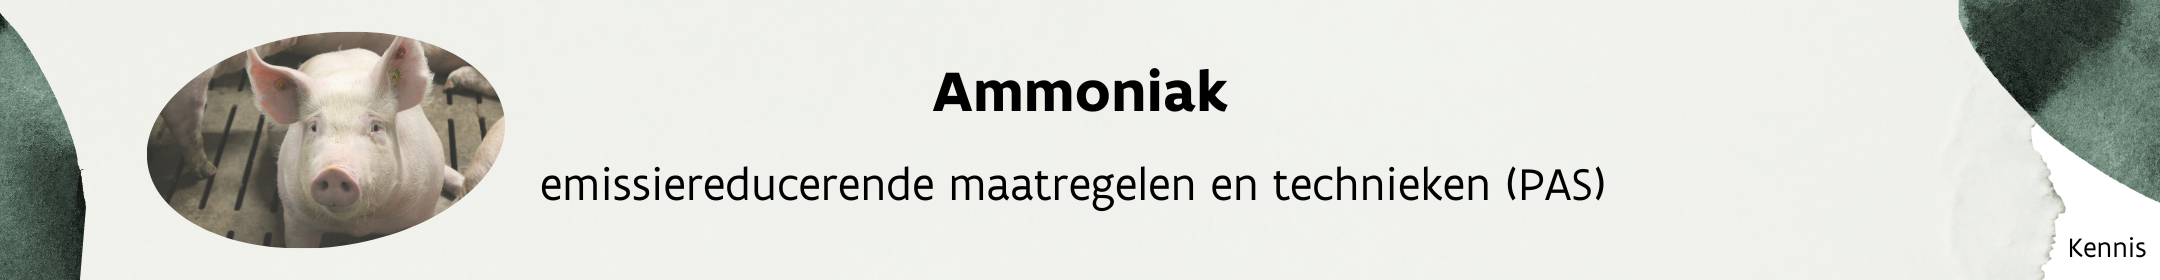 Header_ammoniak